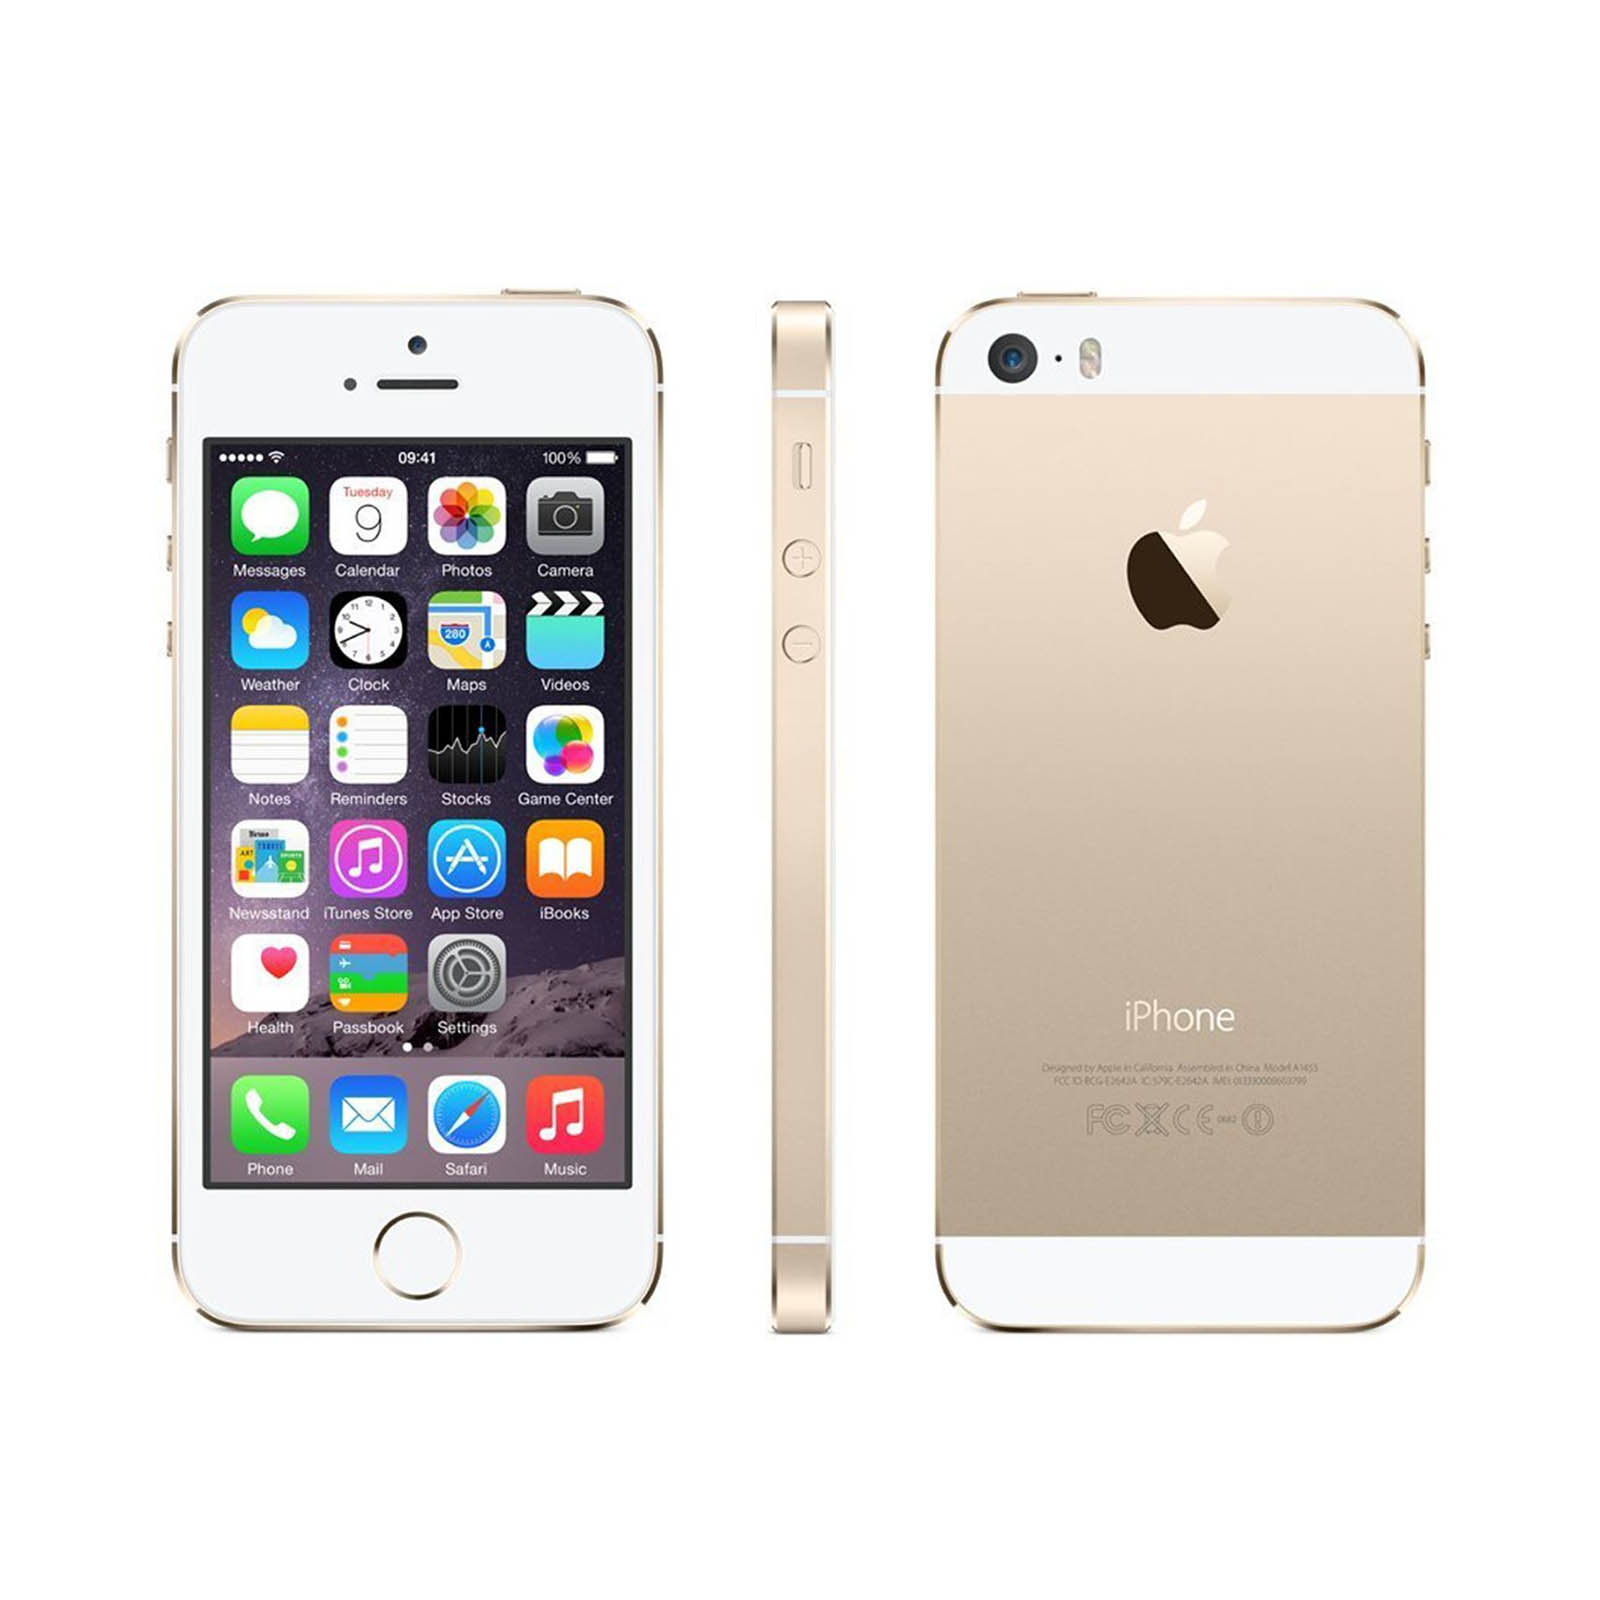 Покупка айфона в россии. Apple iphone 5 16gb. Apple iphone 5s 32gb. Apple iphone 5s 16gb Gold. Apple iphone 5s 64gb.